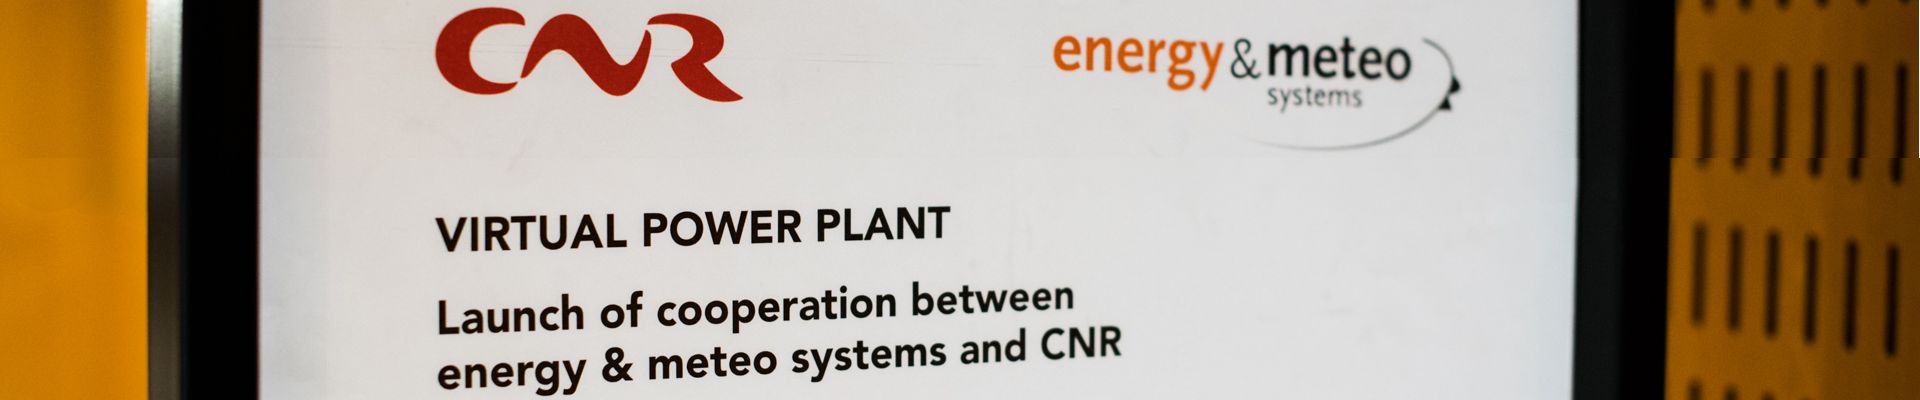 Unser Virtuelles Kraftwerk unterstützt den französischen Stromerzeuger CNR bei der Direktvermarktung von Solar- und Windstrom im französischen Strommarkt